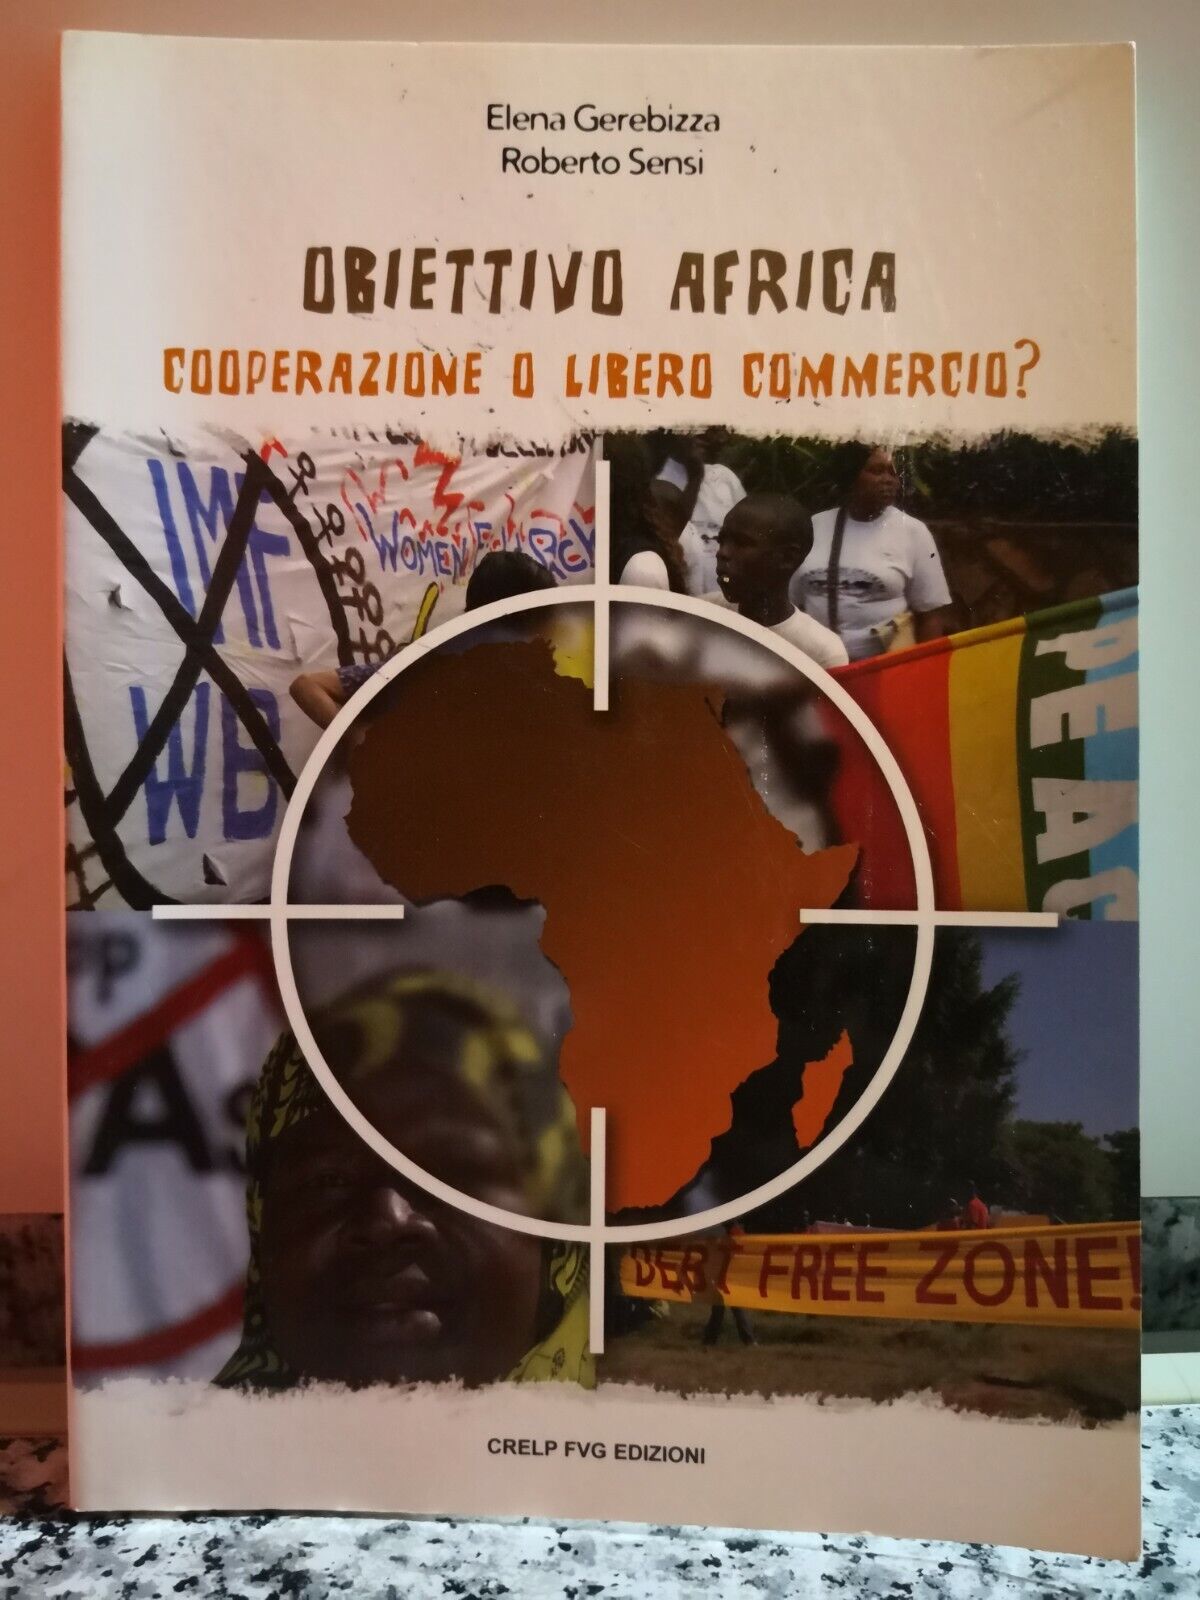  Obiettivo Africa (Cooperazione o libero commercio?) di E. Gerebizza R.Sensi -F